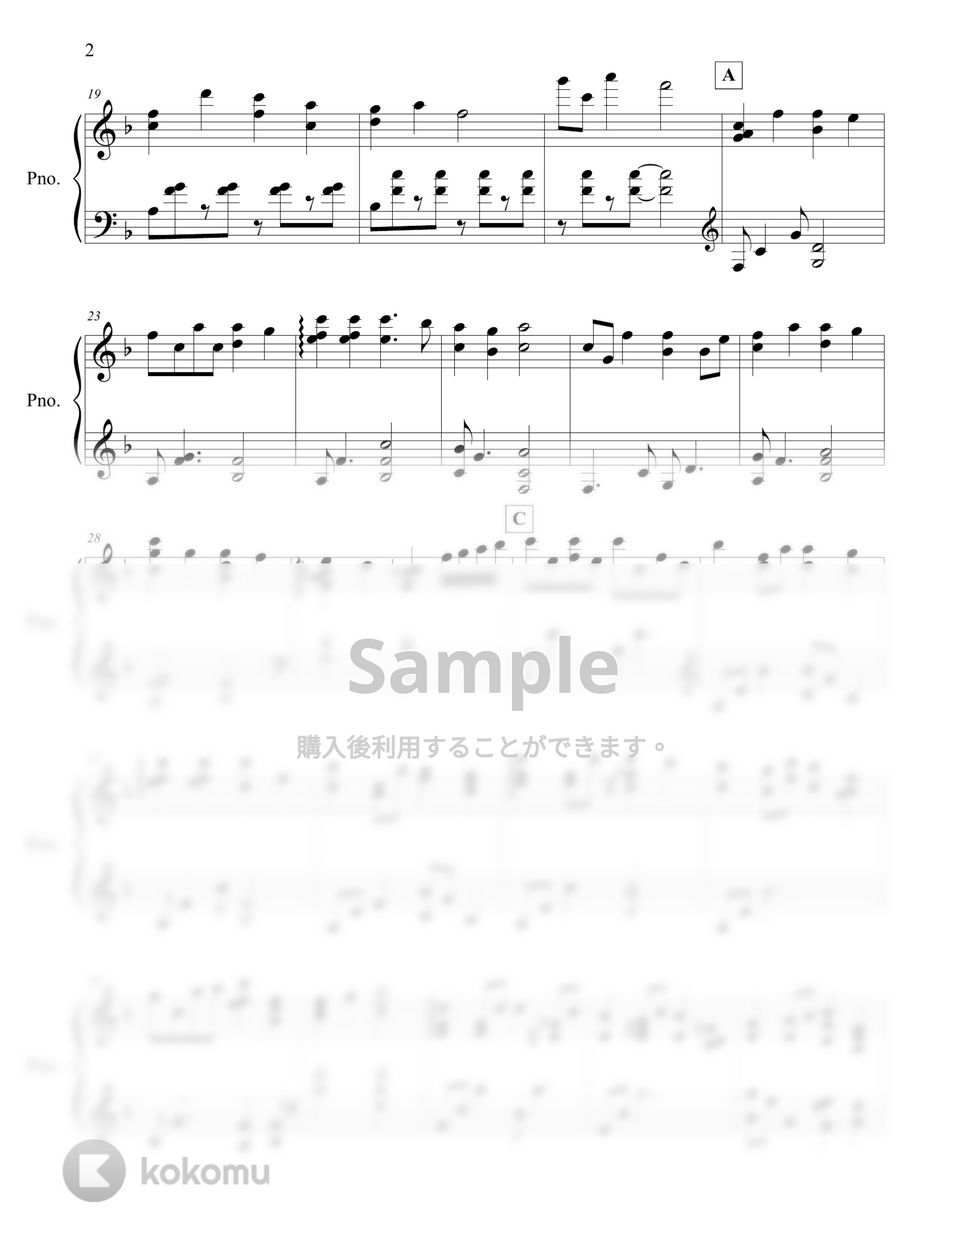 Felix Mendelssohn - Hark The Herald Angel Sing by Keunyoung Song